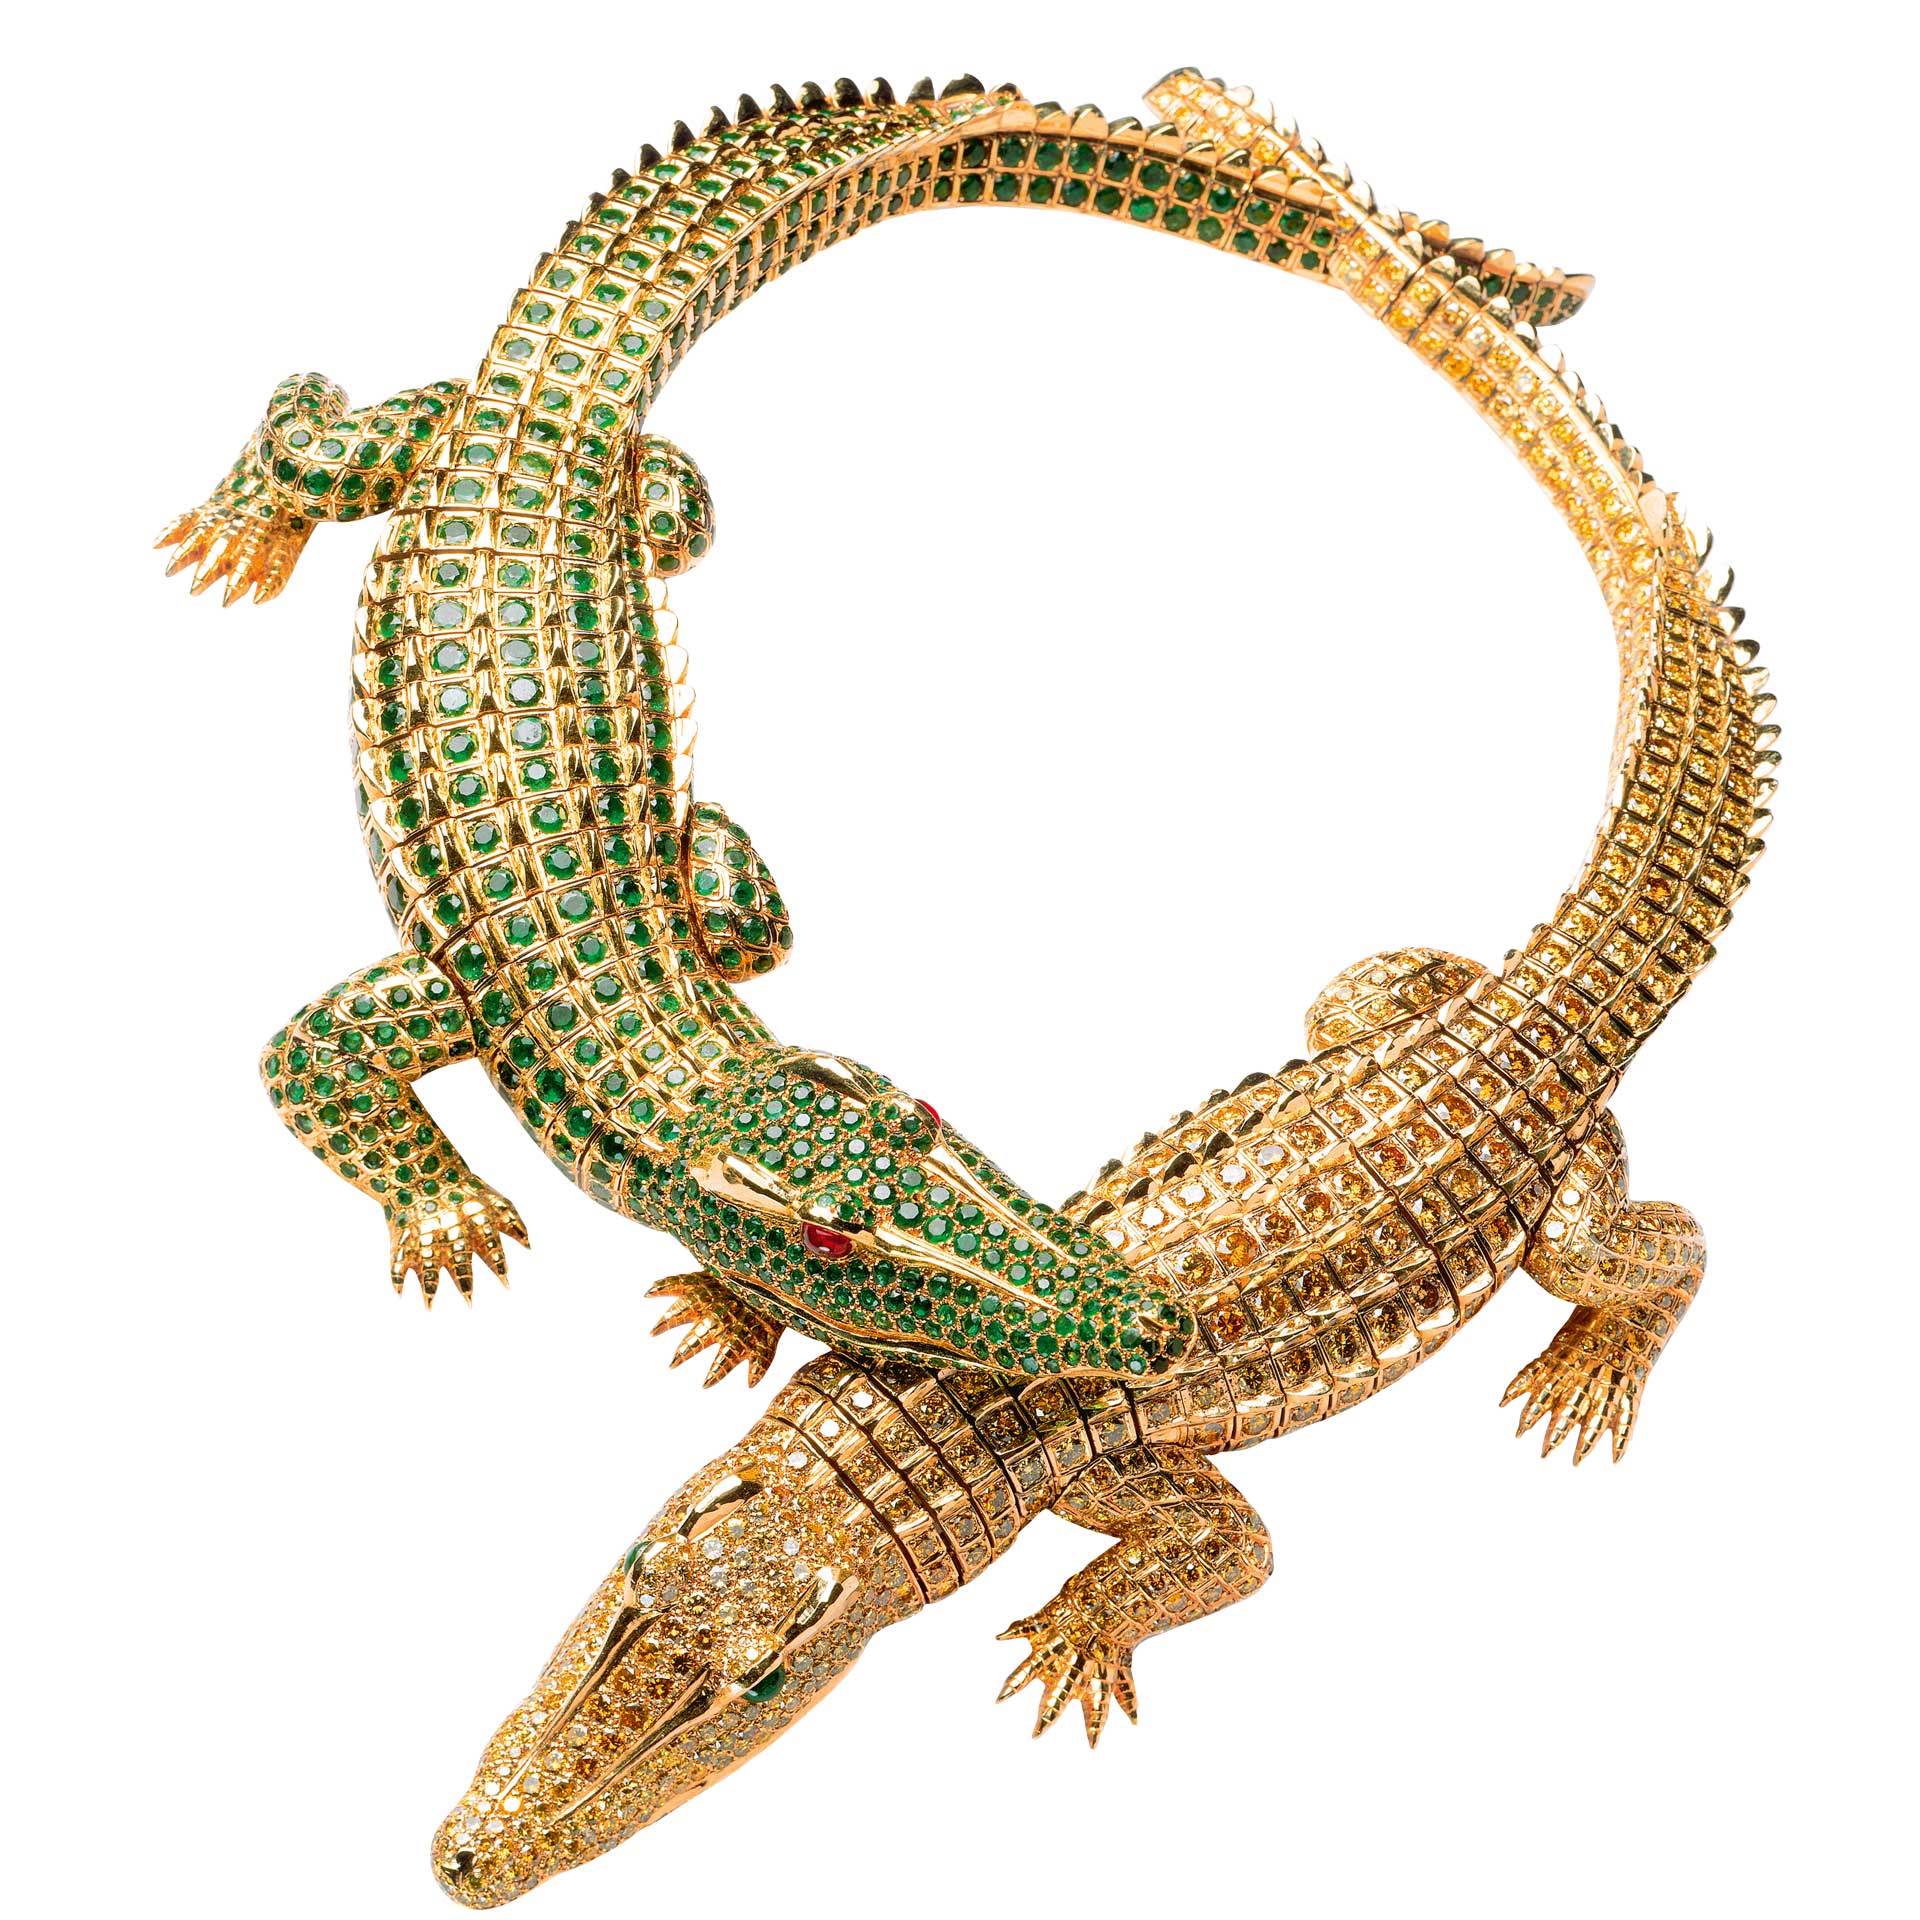 María Félix's Crocodile Necklace